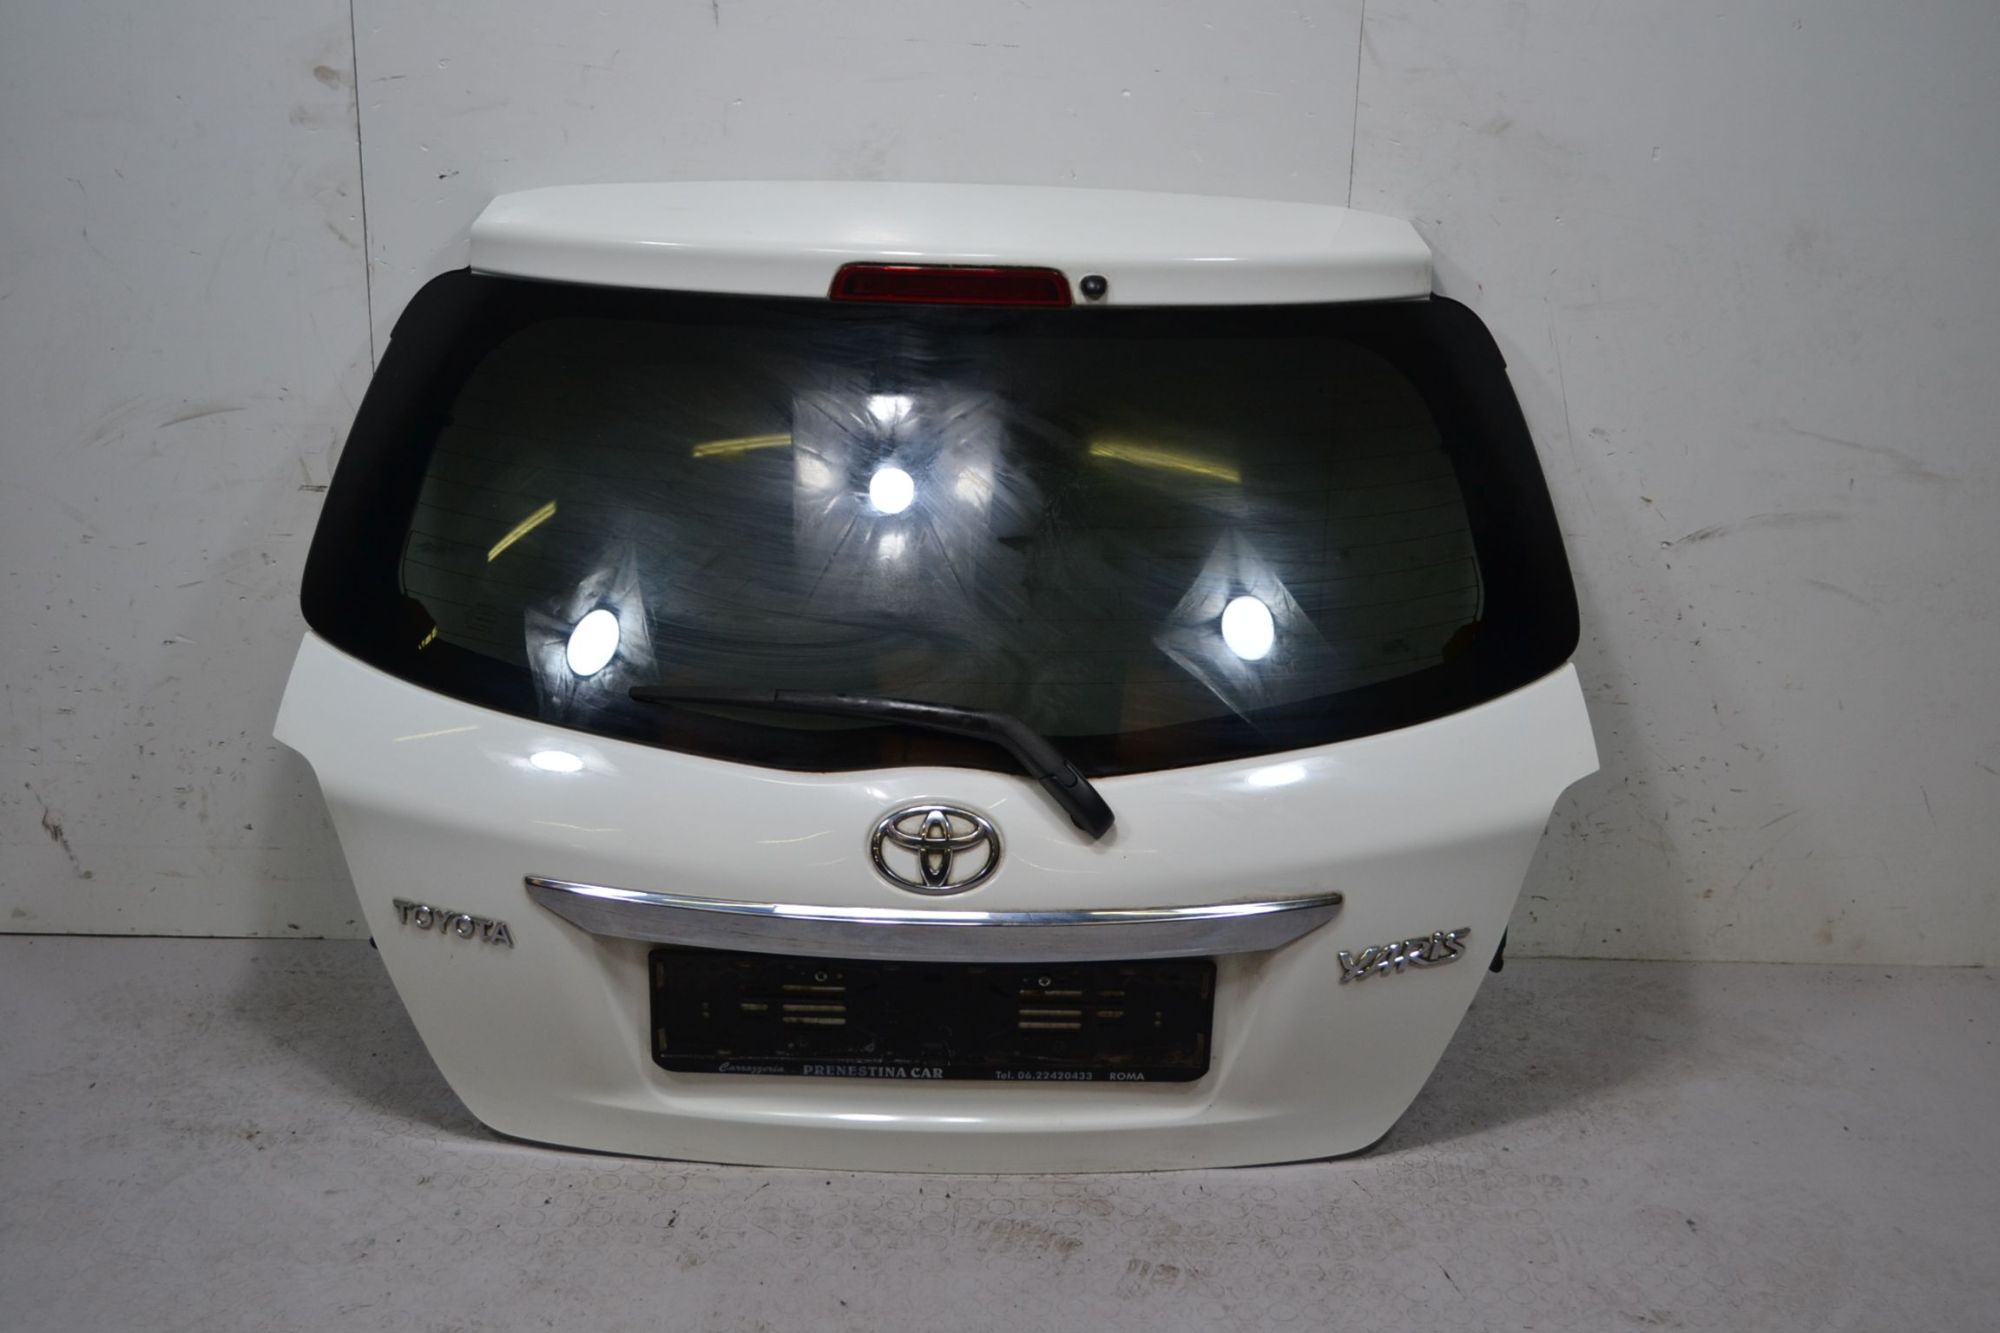 Portellone bagagliaio posteriore Toyota Yaris Dal 2011 al 2019 Cod OE 670050D111  1711721196451